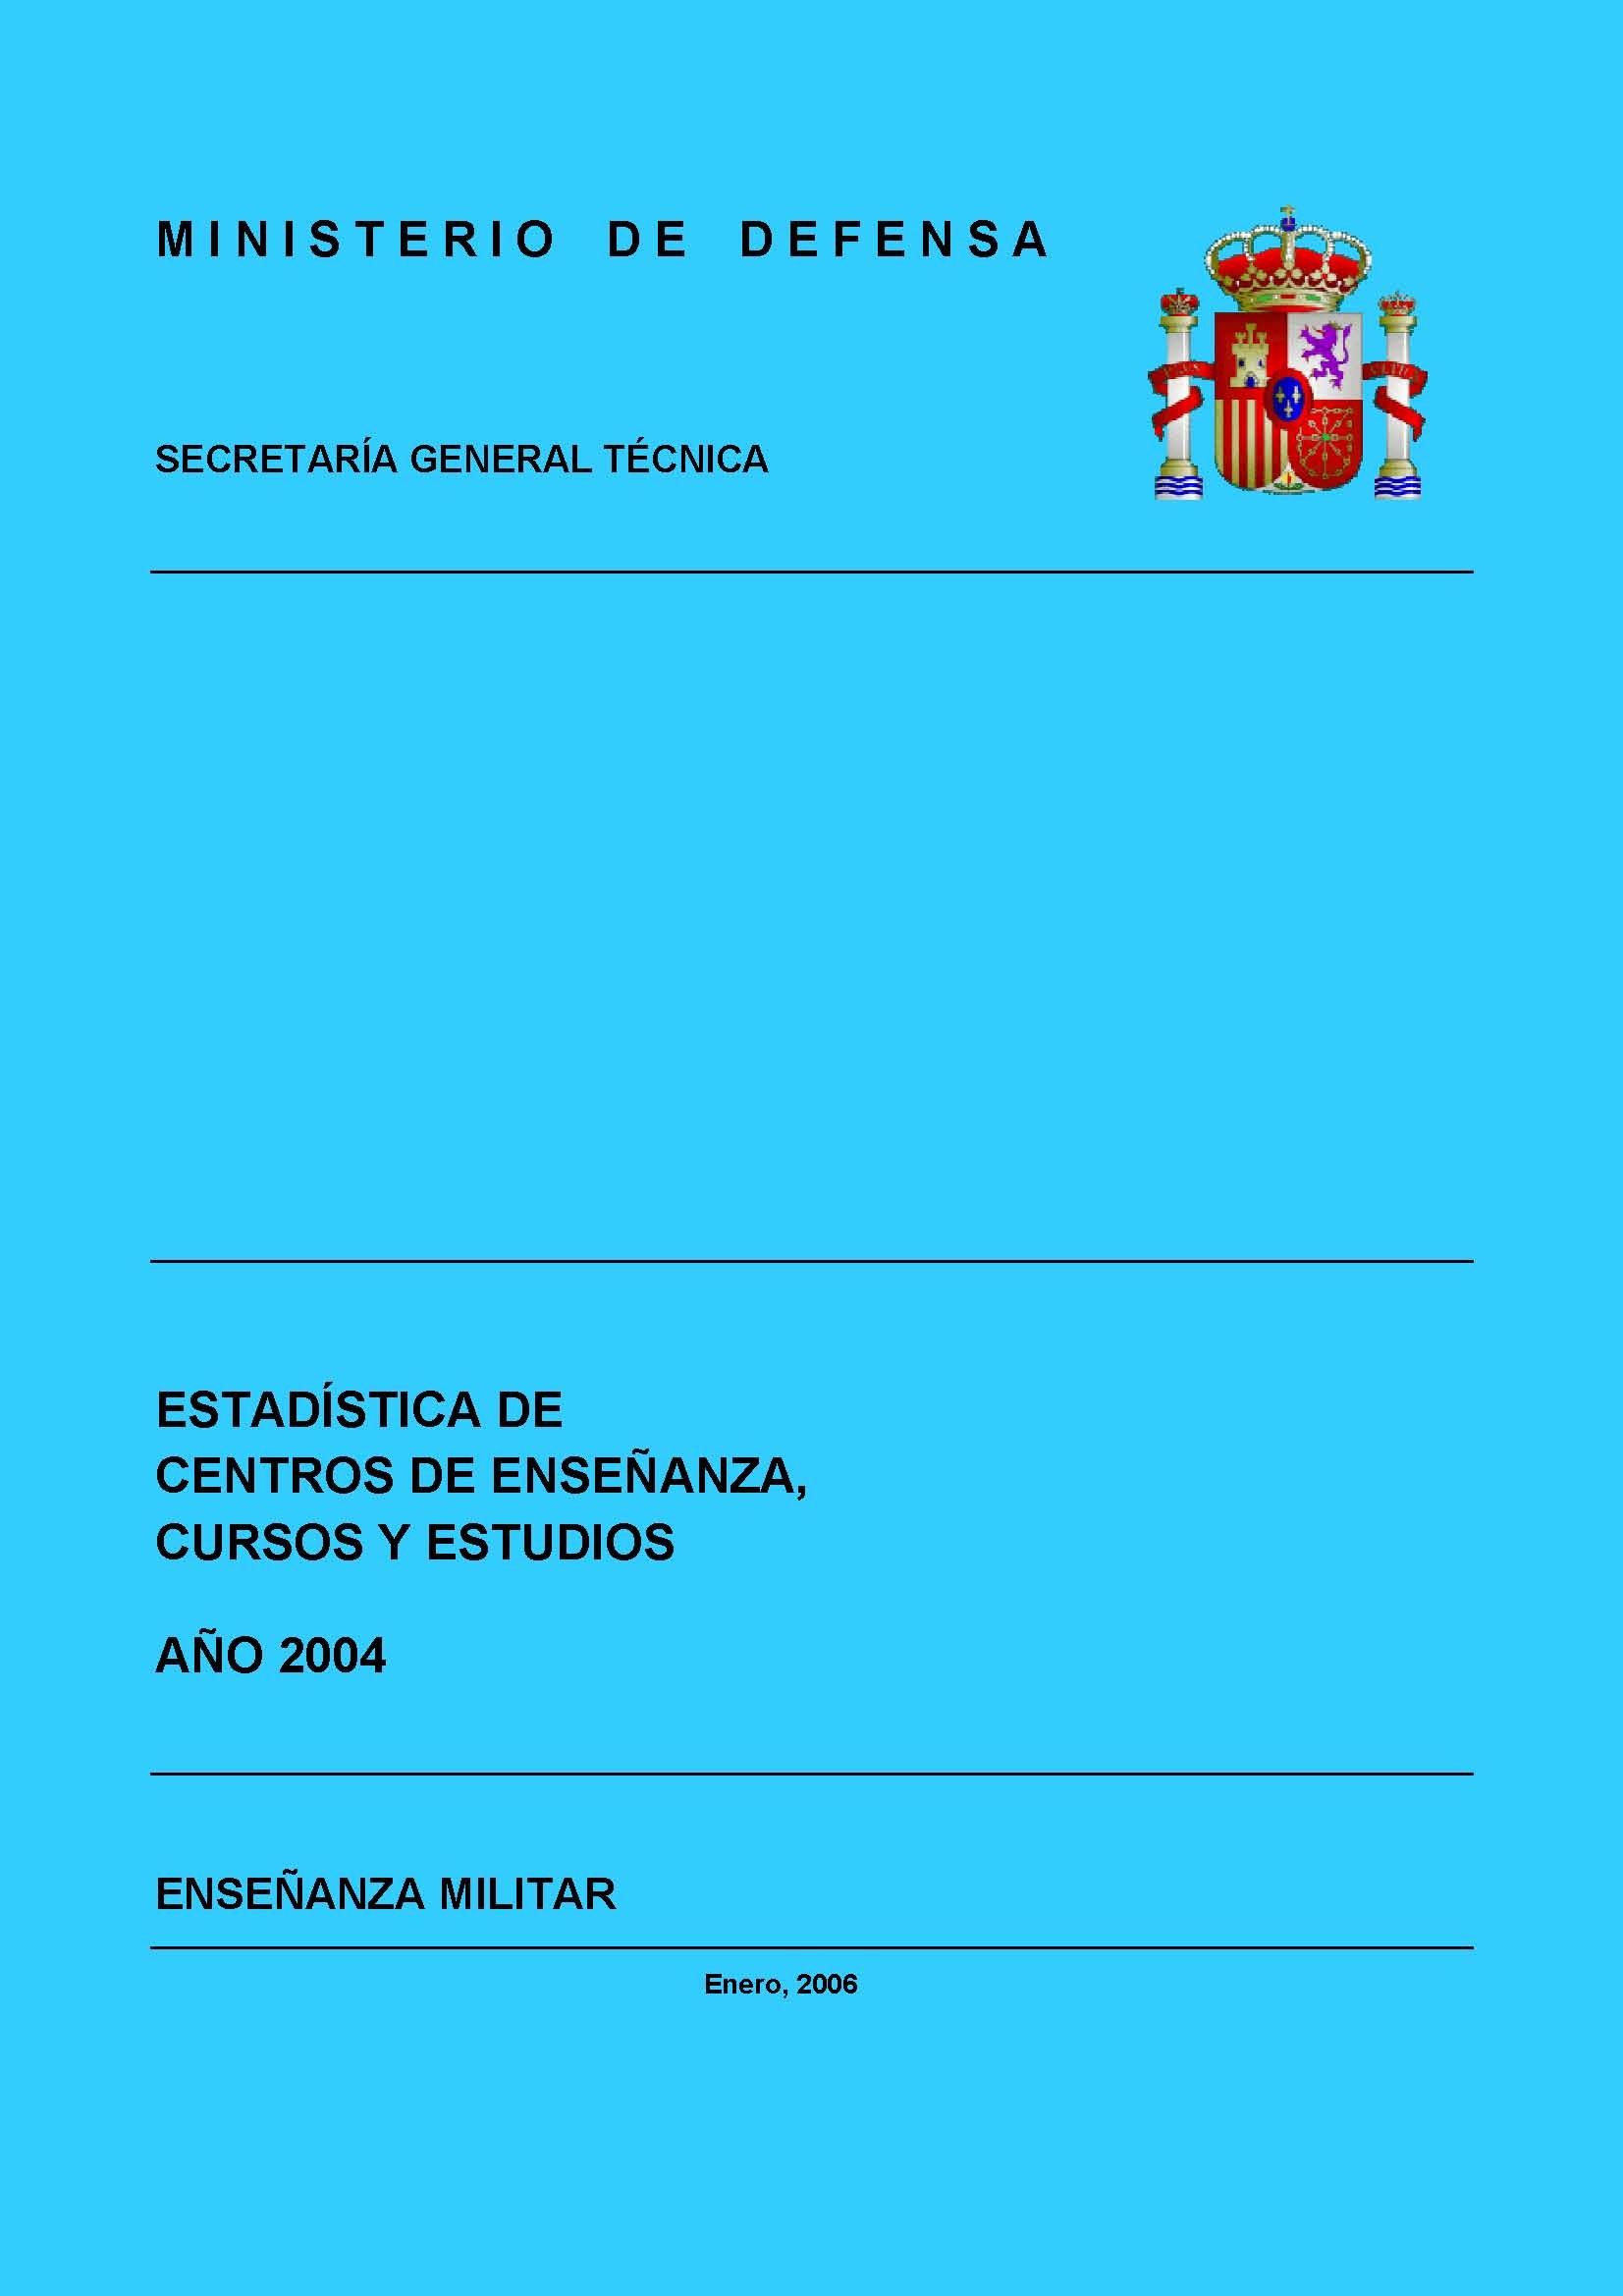 ESTADÍSTICA DE CENTROS DE ENSEÑANZA, CURSOS Y ESTUDIOS 2004